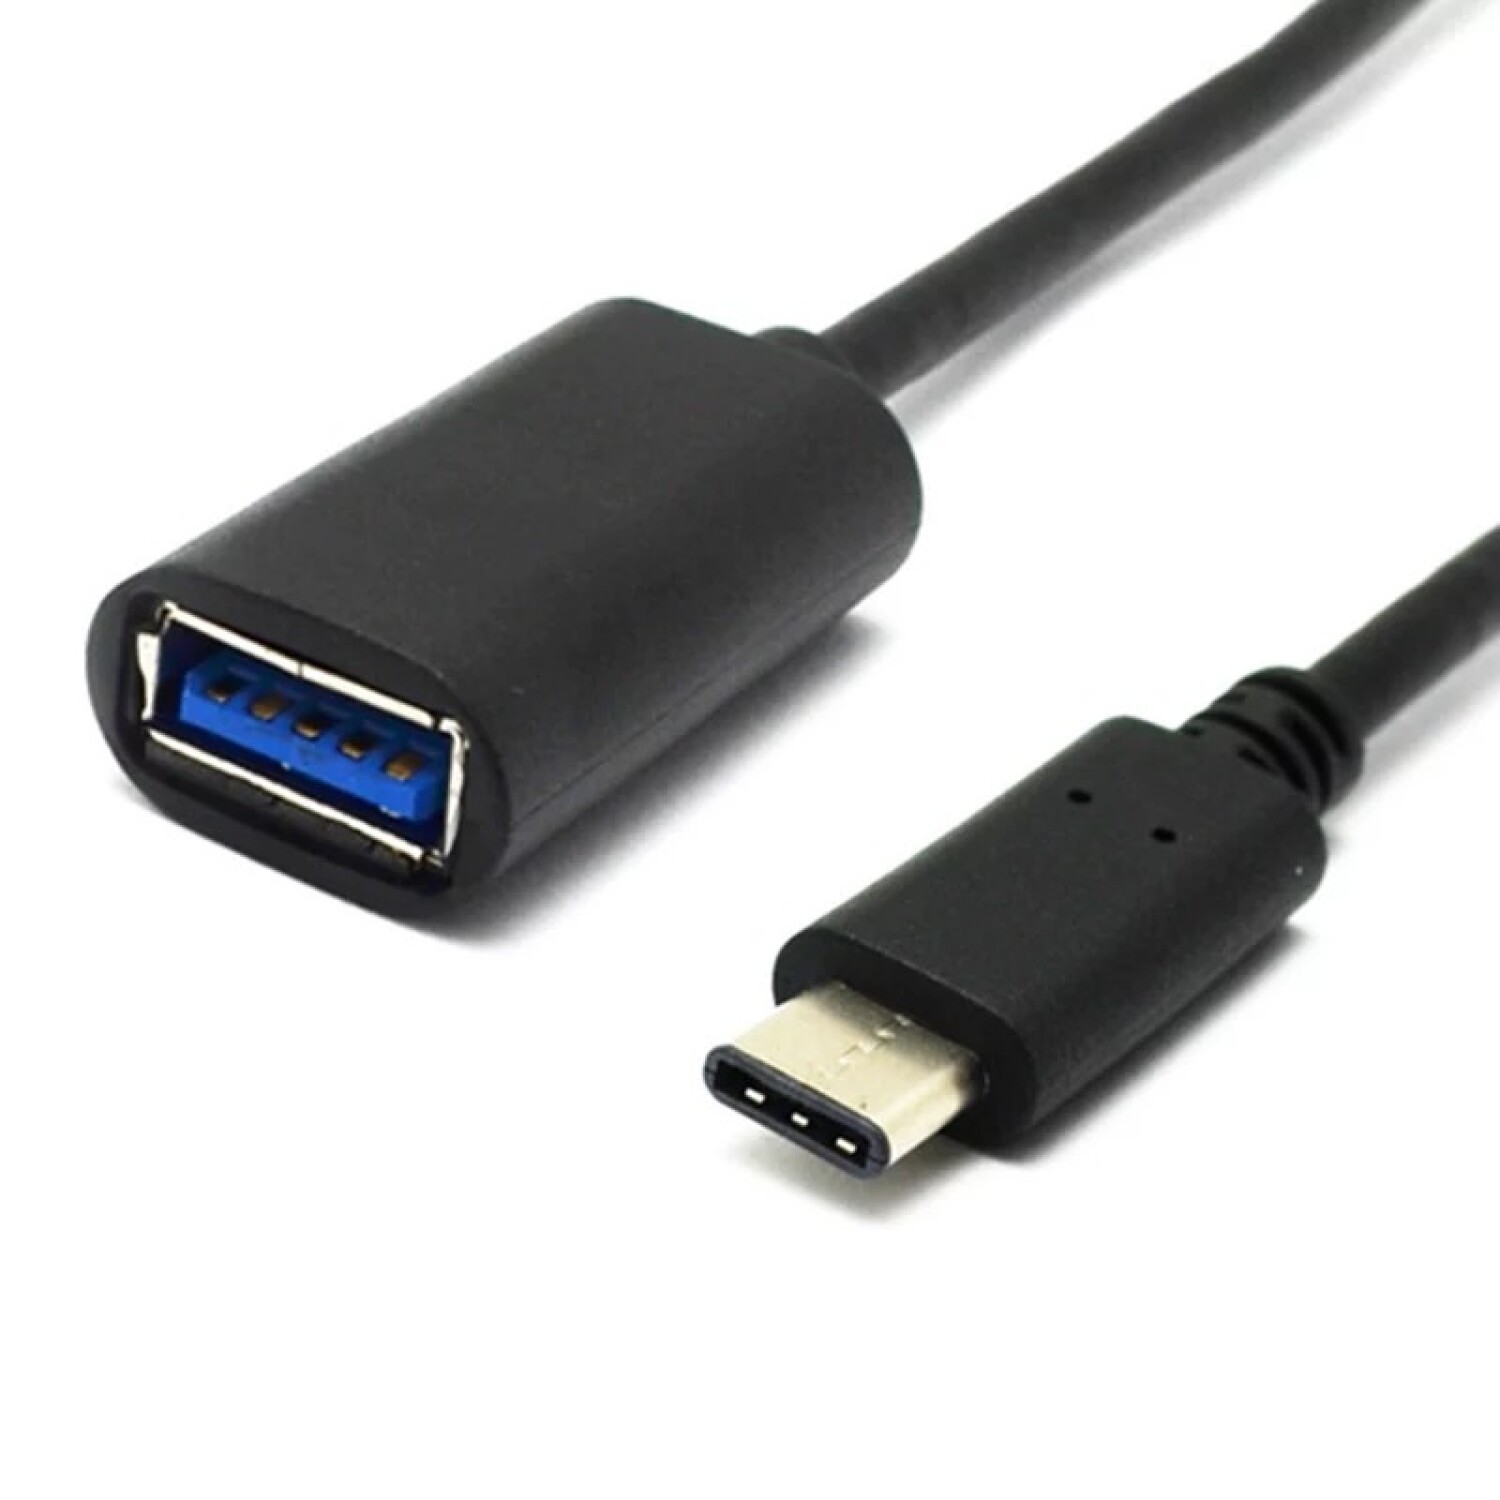 Cable adaptador OTG / Convertidor USB 3.1 tipo C a USB 3.0 hembra -  Tecnopura